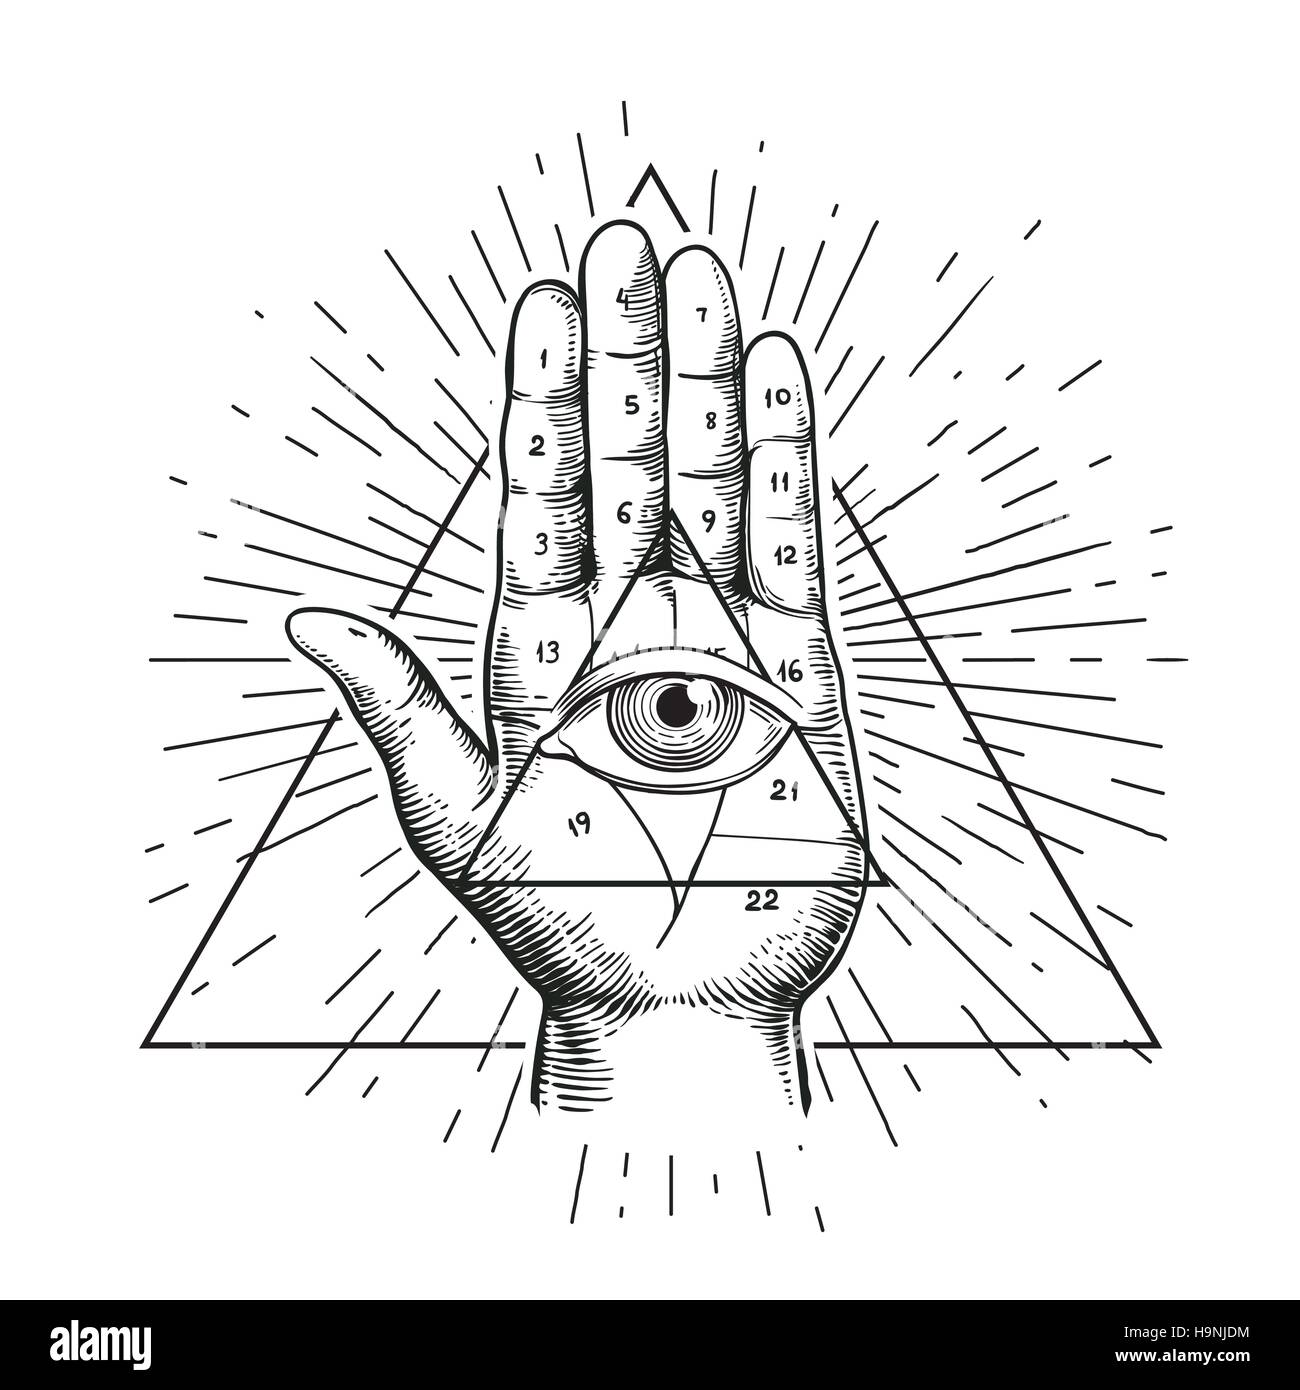 Illustrazione hipster con sunburst, la mano e l'occhio che tutto vede il simbolo triangolo abitacolo piramide. Occhio della Provvidenza. Simbolo massonico. Grunge di esoterico spiritu Illustrazione Vettoriale